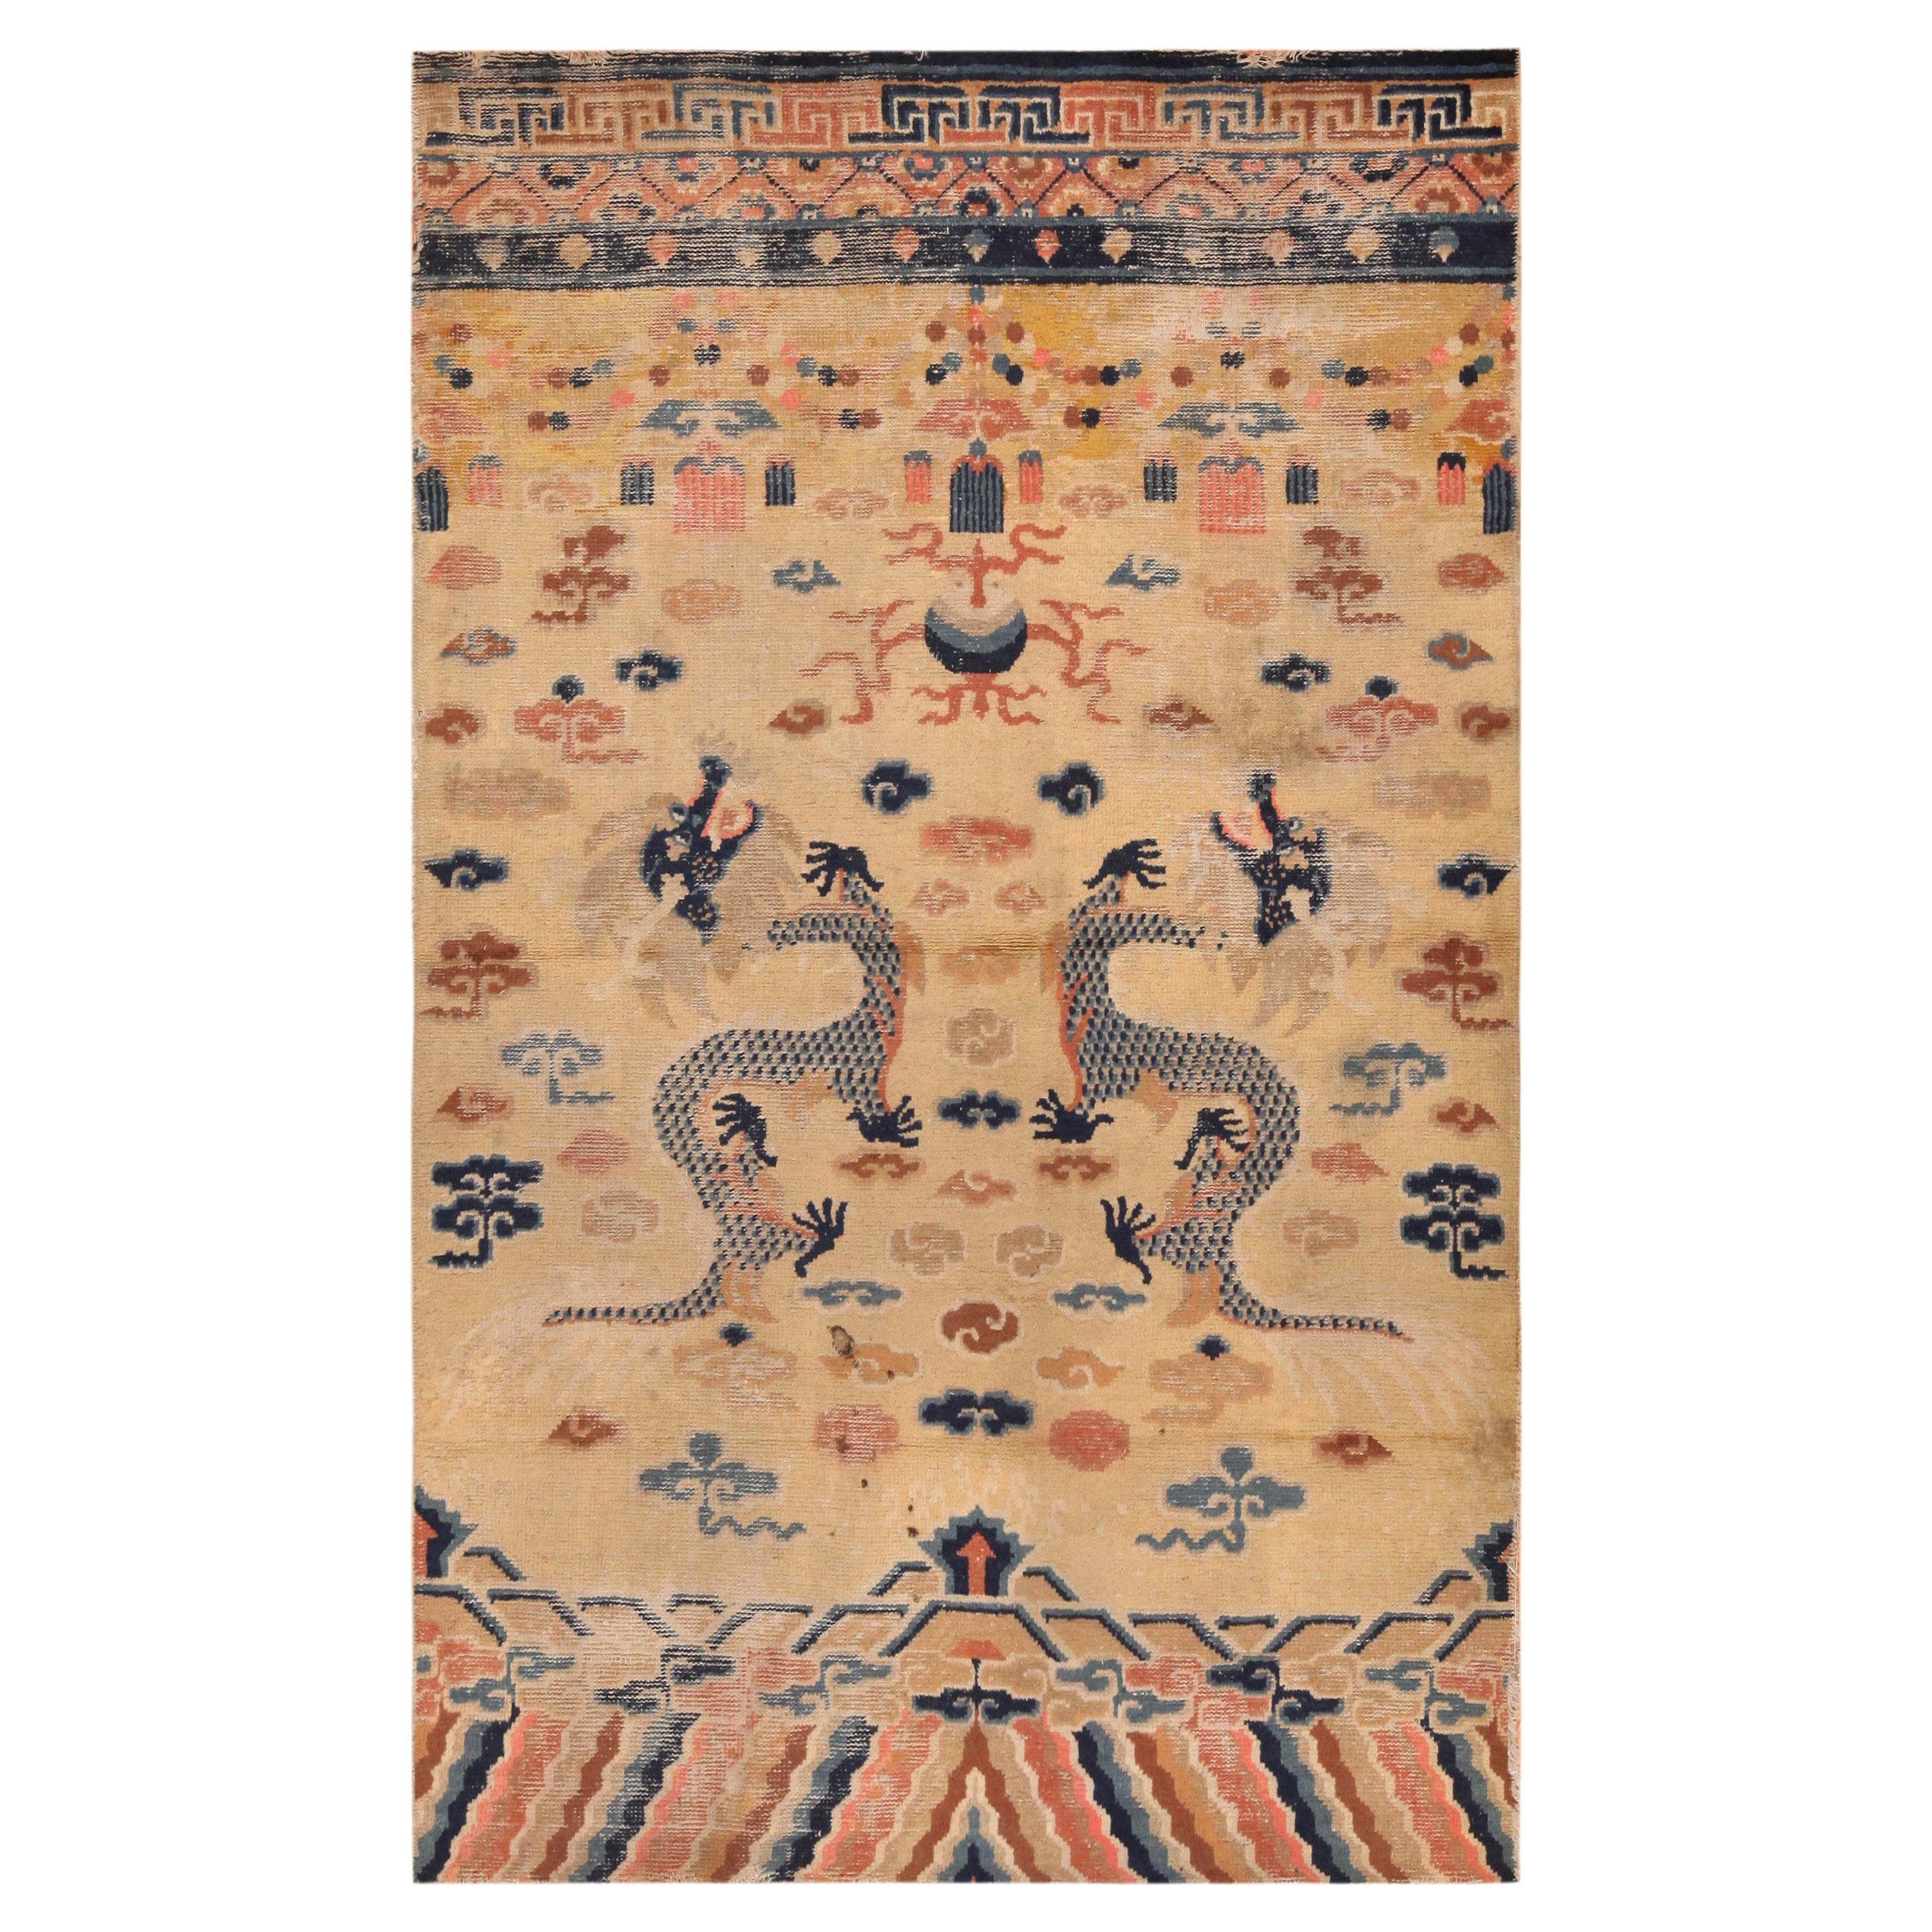 Antiker chinesischer Teppich im Drachendesign. 4 ft 4 in x 6 ft 10 in